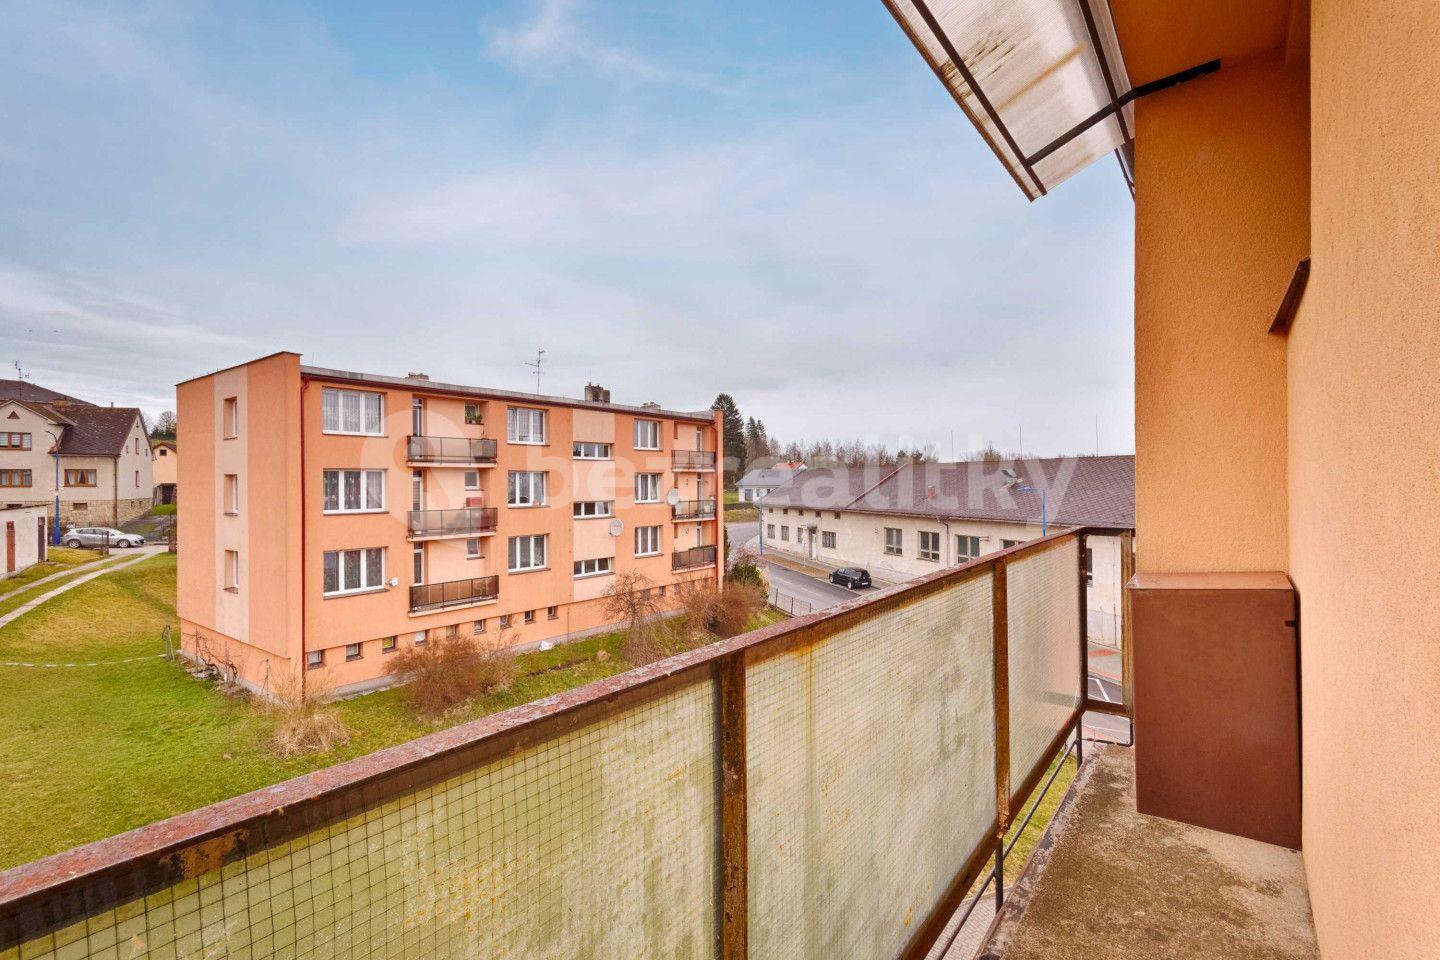 2 bedroom flat for sale, 45 m², Družstevní, Kamenice nad Lipou, Vysočina Region